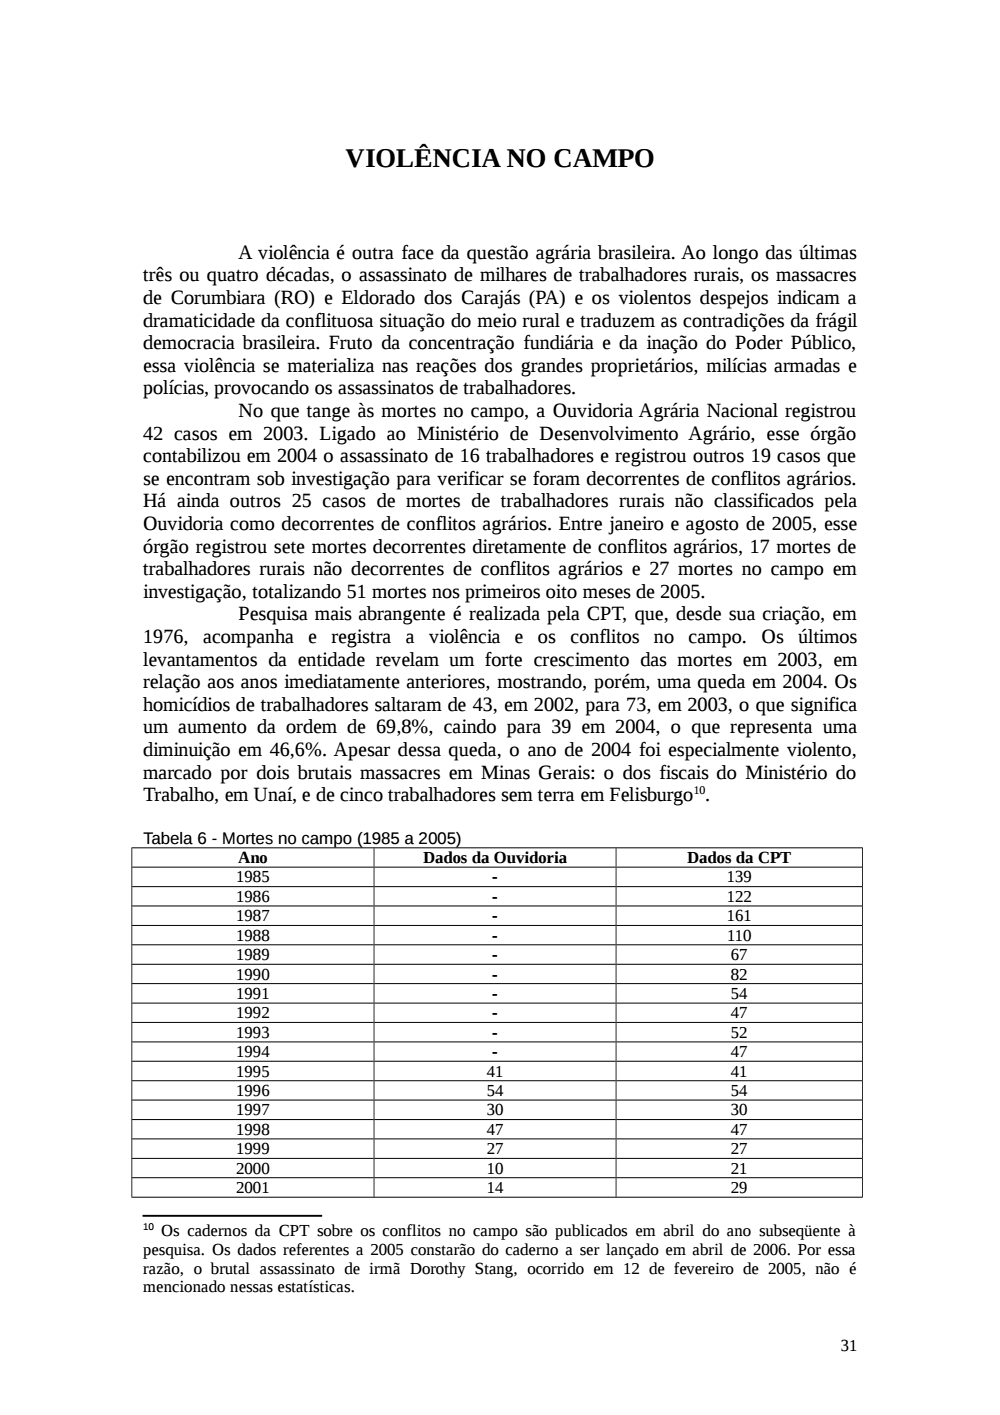 Page 31 from Relatório final da comissão